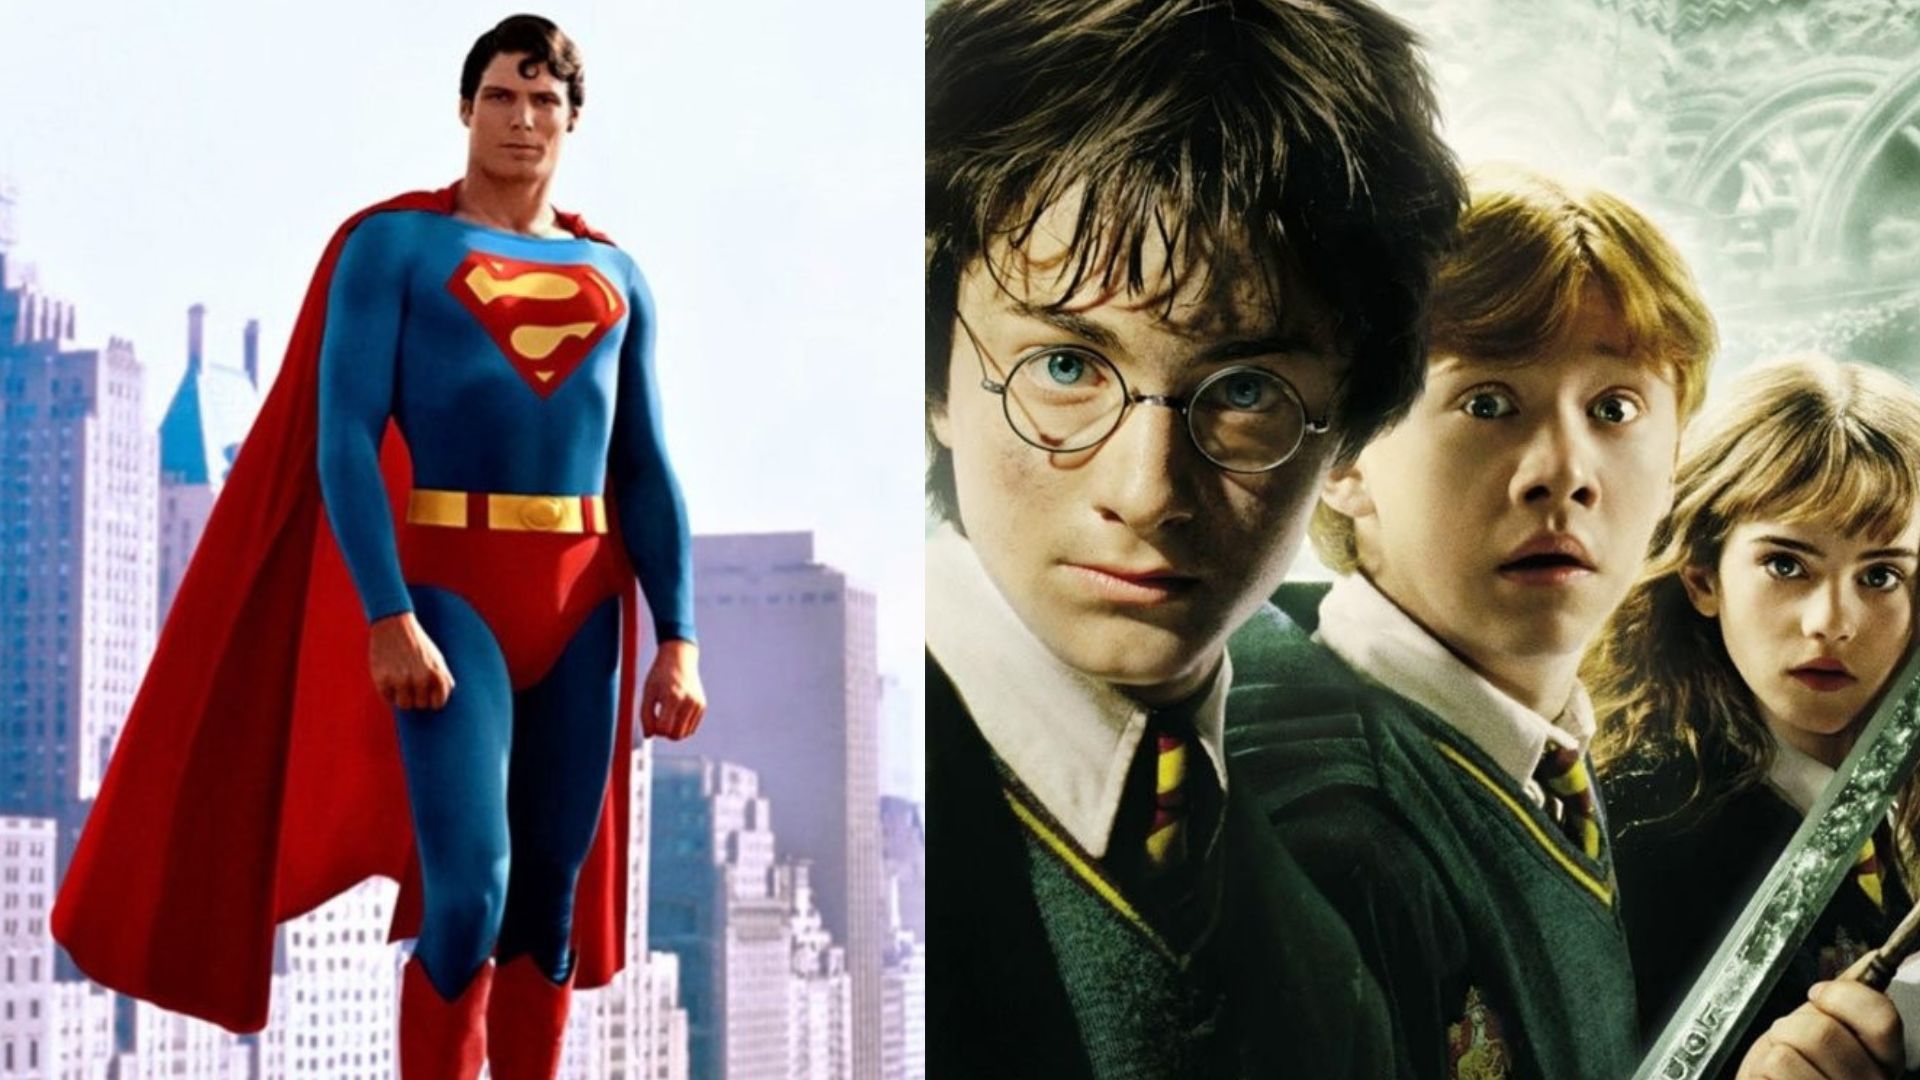 Si es fan de Superman o Harry Potter ¡Pilas! Subastaran artículos de los films